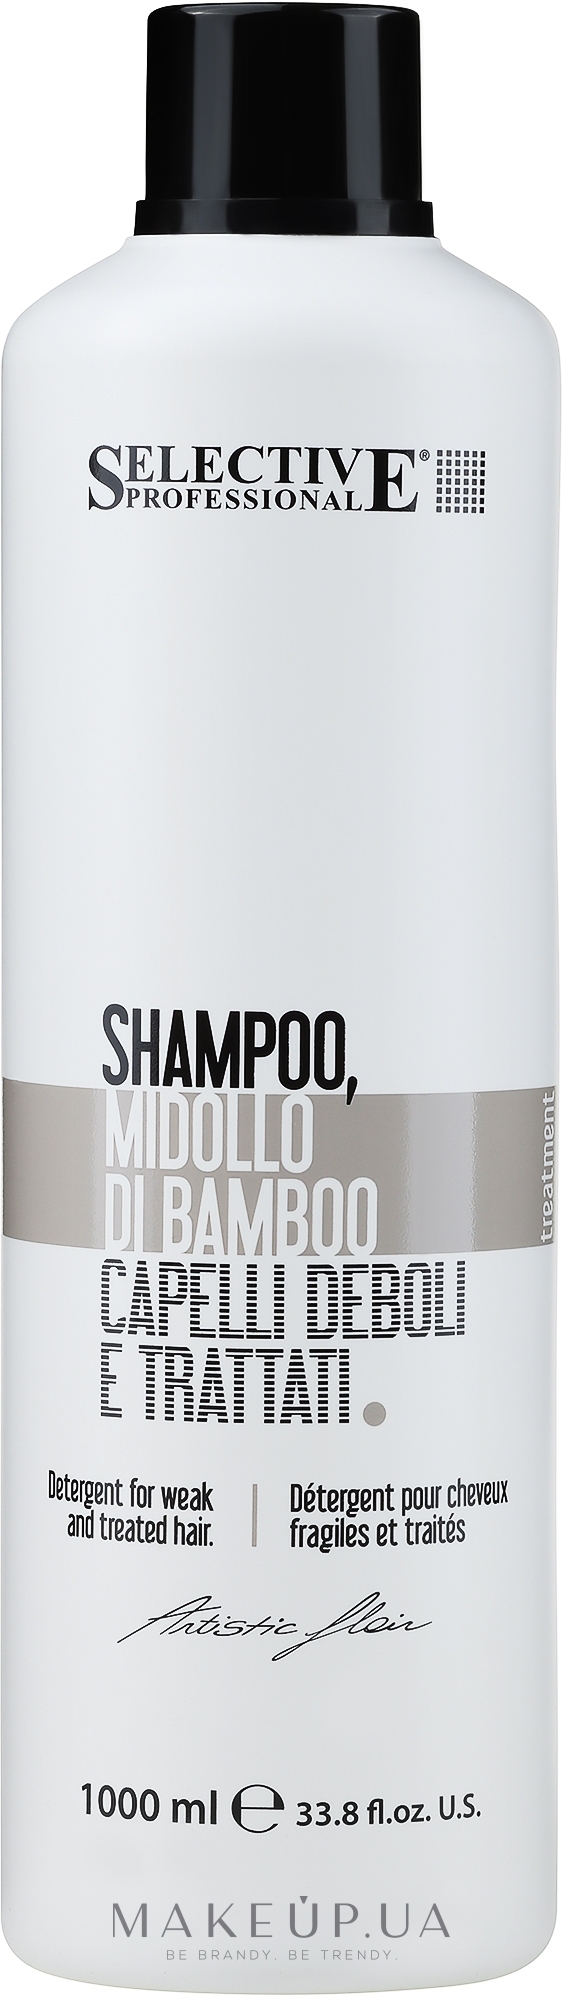 Шампунь для слабых и поврежденных волос - Selective Professional Artistic Flair Midollo Shampoo — фото 1000ml